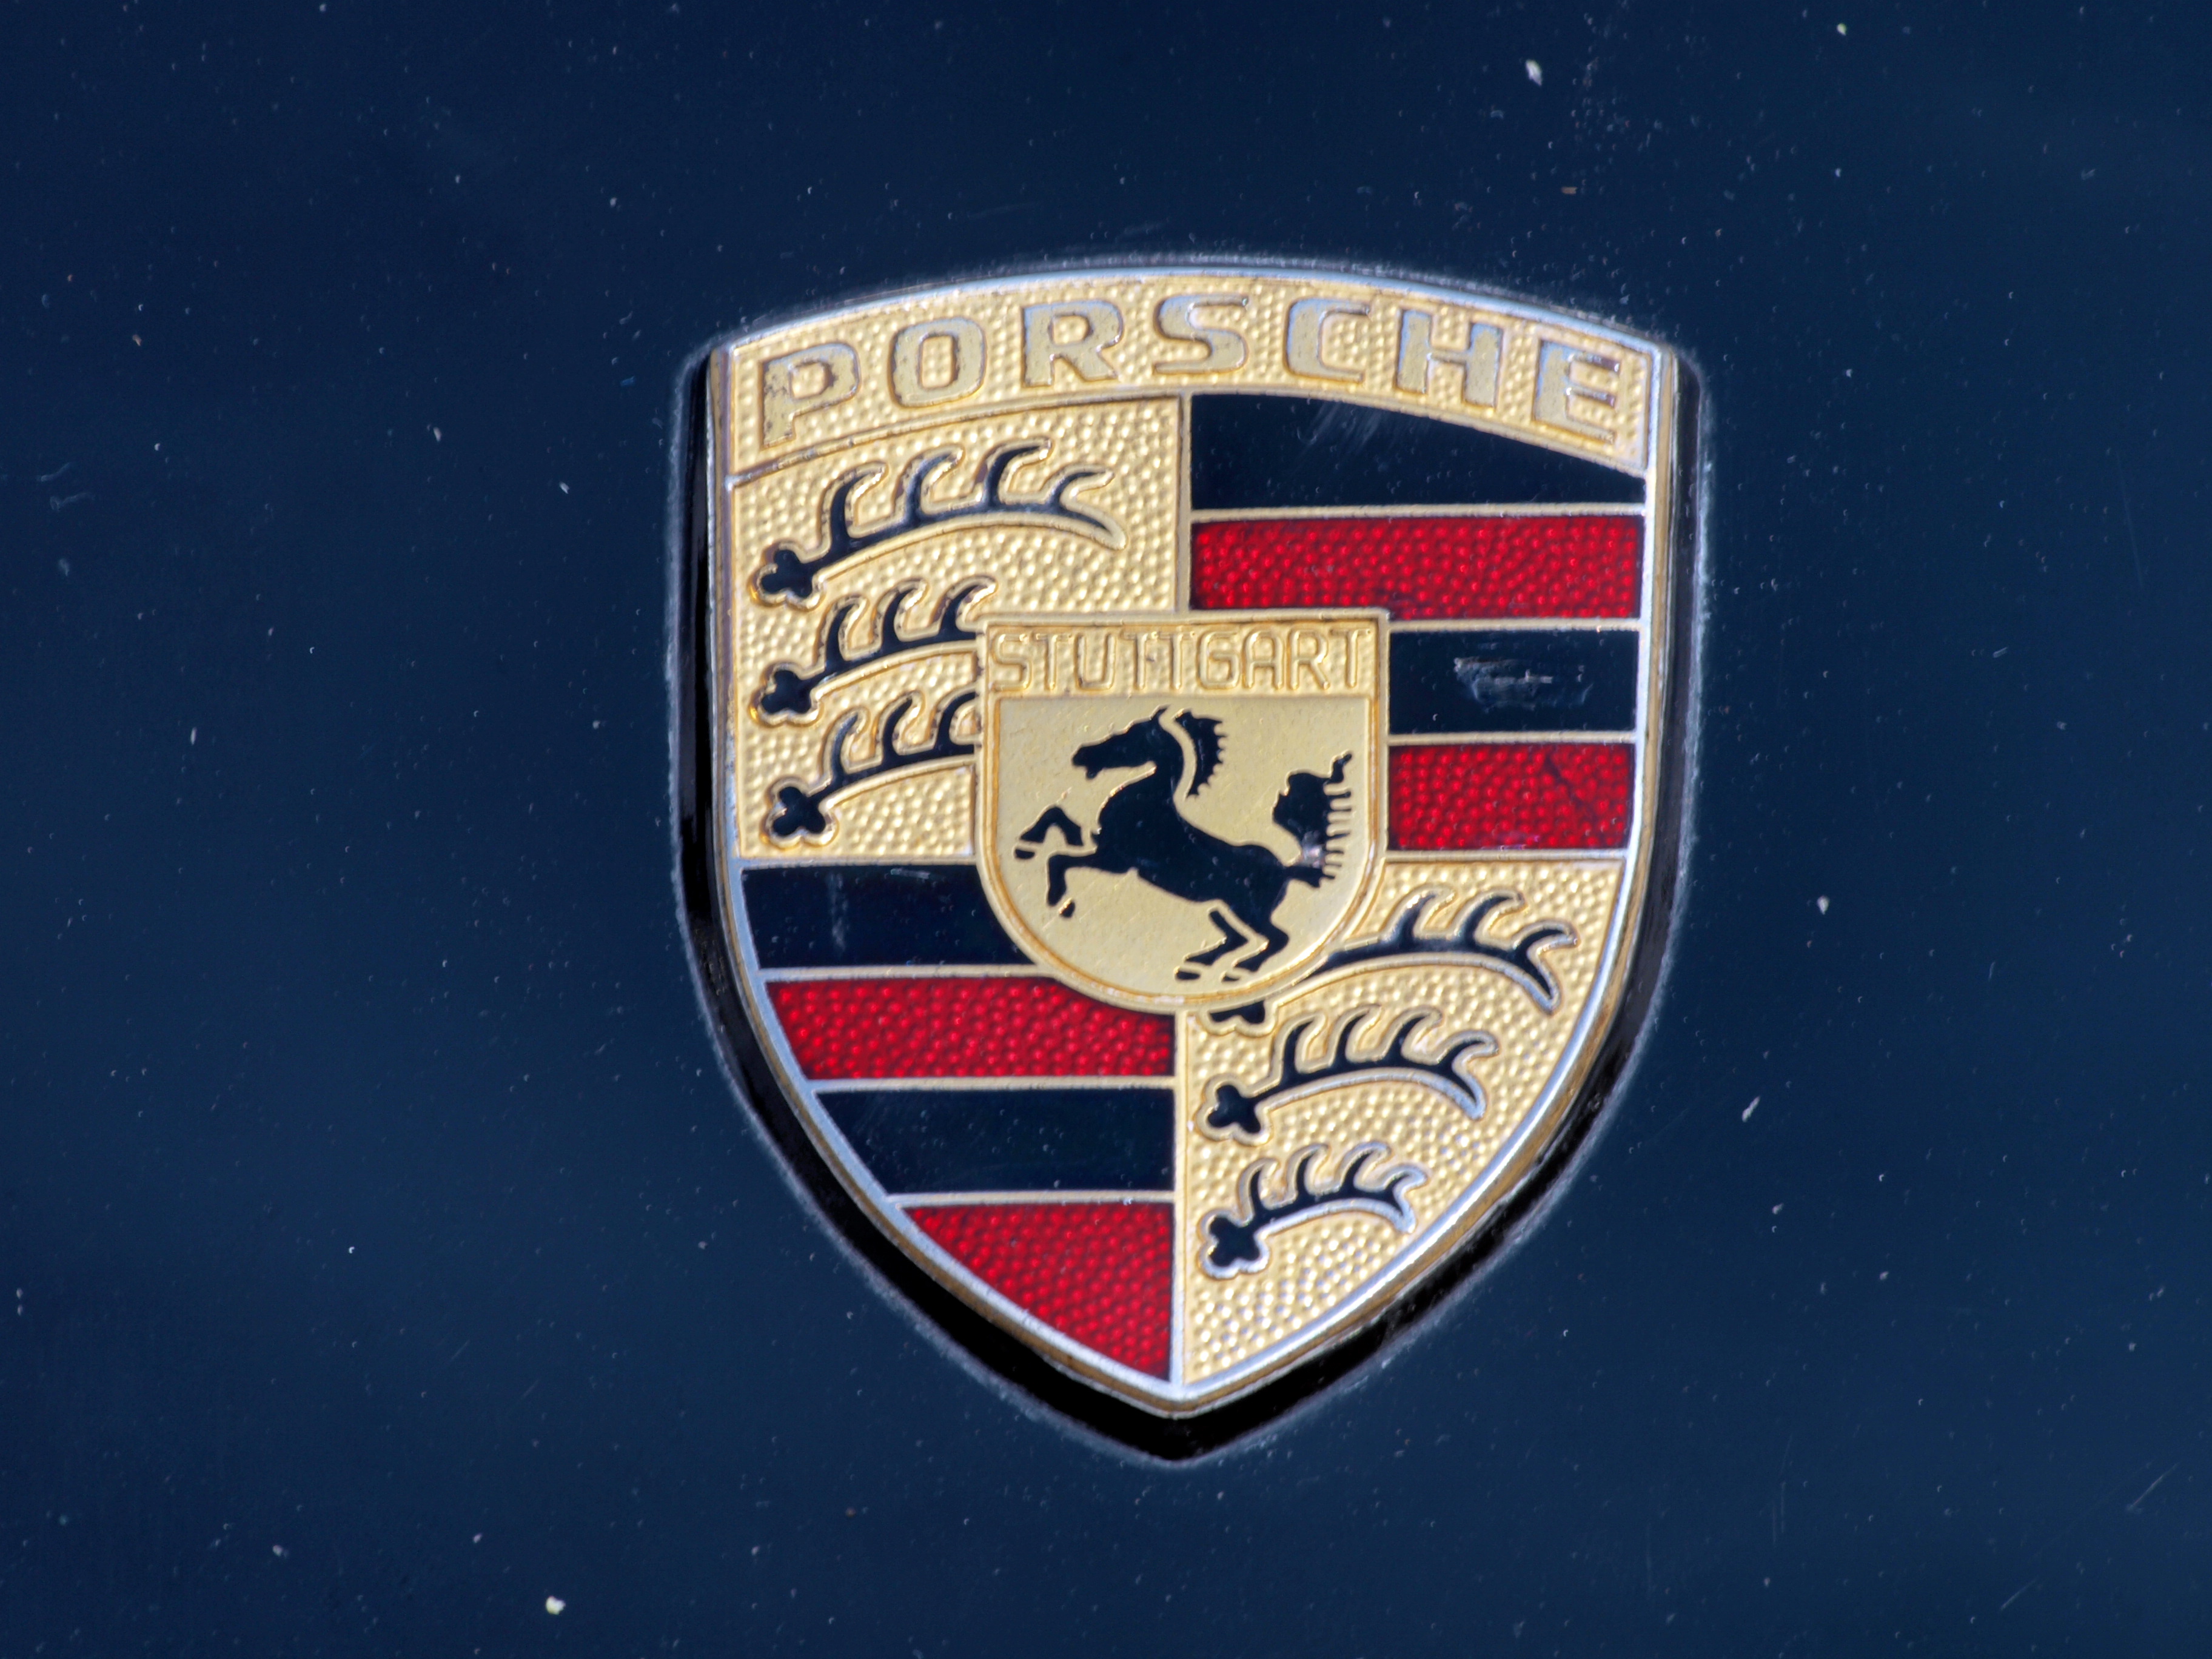 File:Porsche emblem on a blue Porsche.jpg - Wikimedia Commons